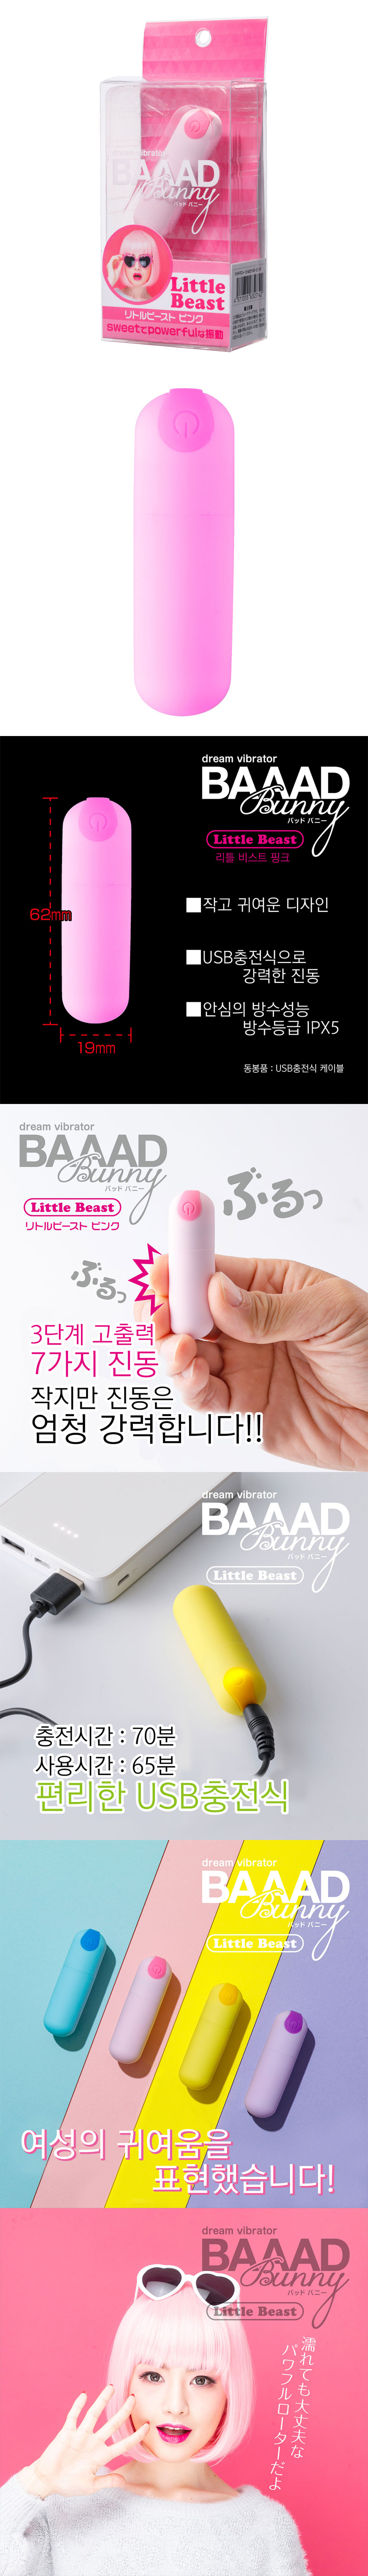 배드 바니 리틀 비스트 핑크 (일본정품)